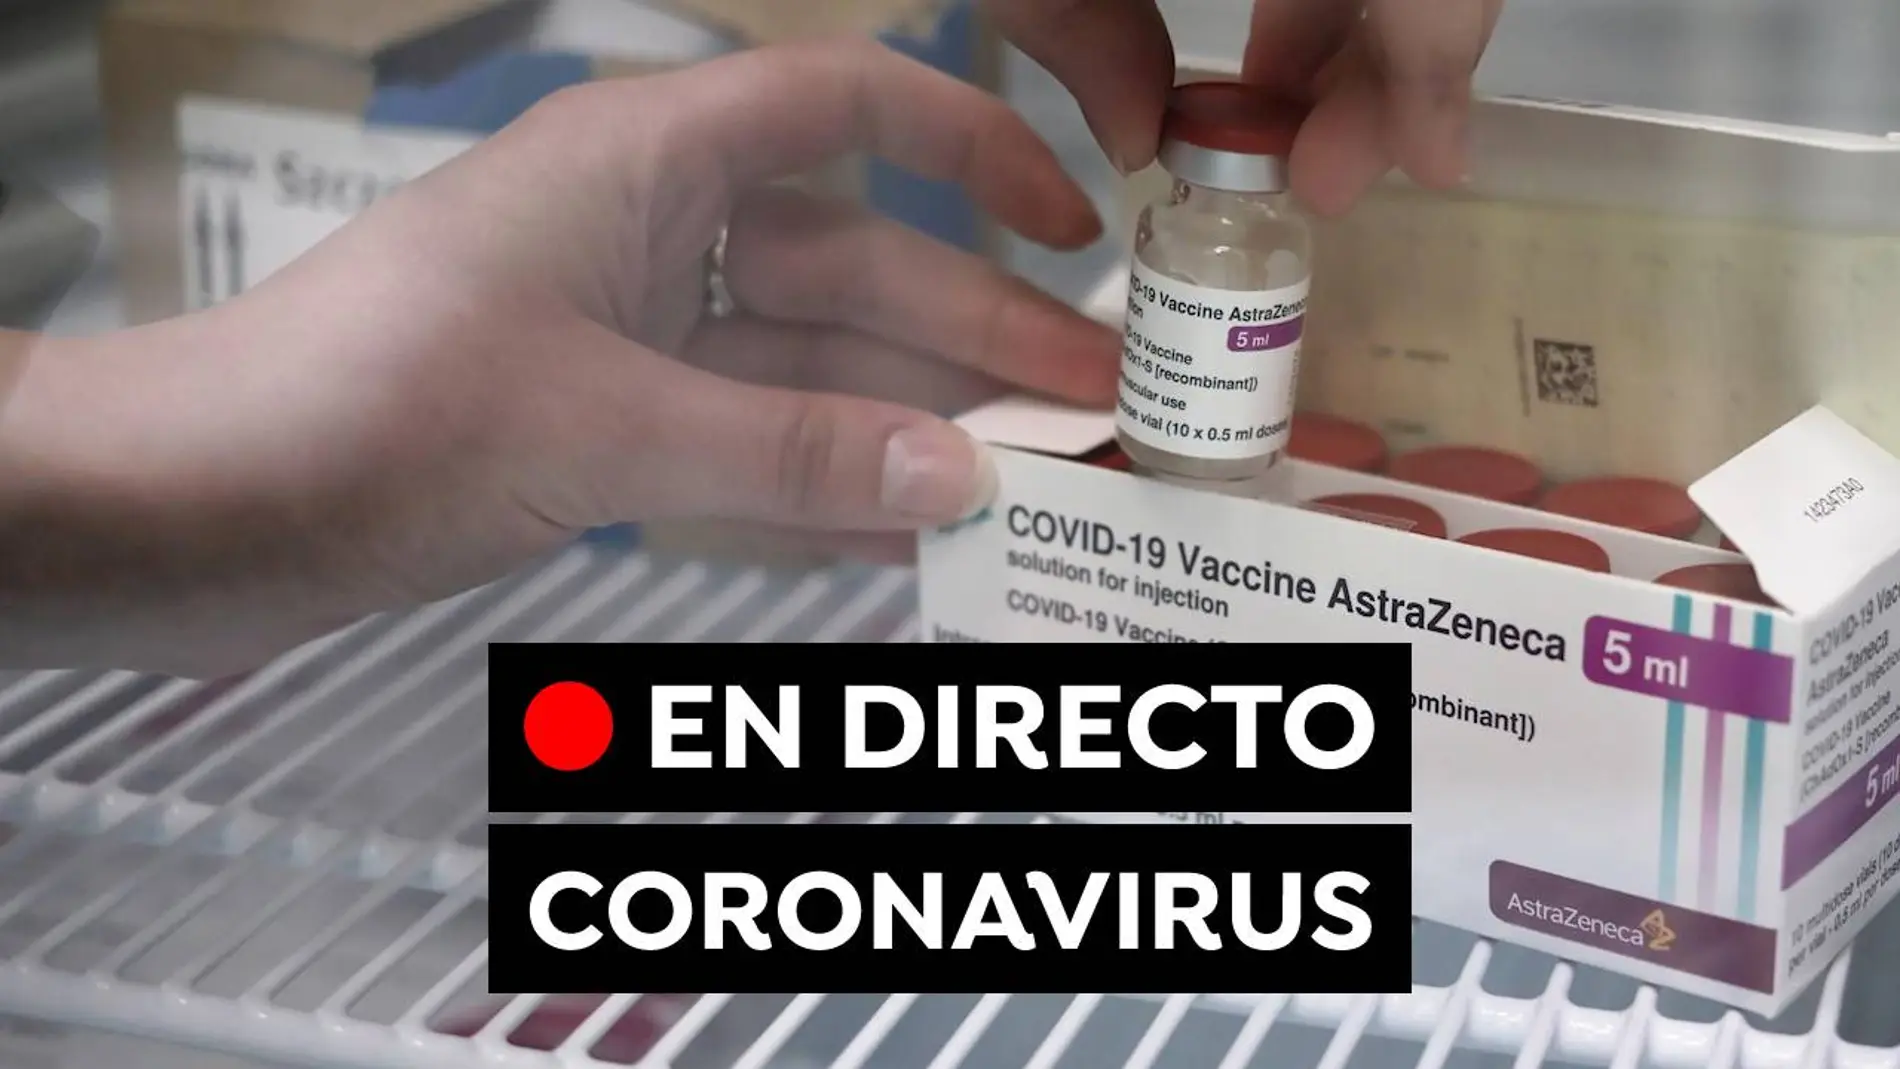 Restricciones coronavirus: Datos, vacunas contra el covid-19 y última hora, en directo